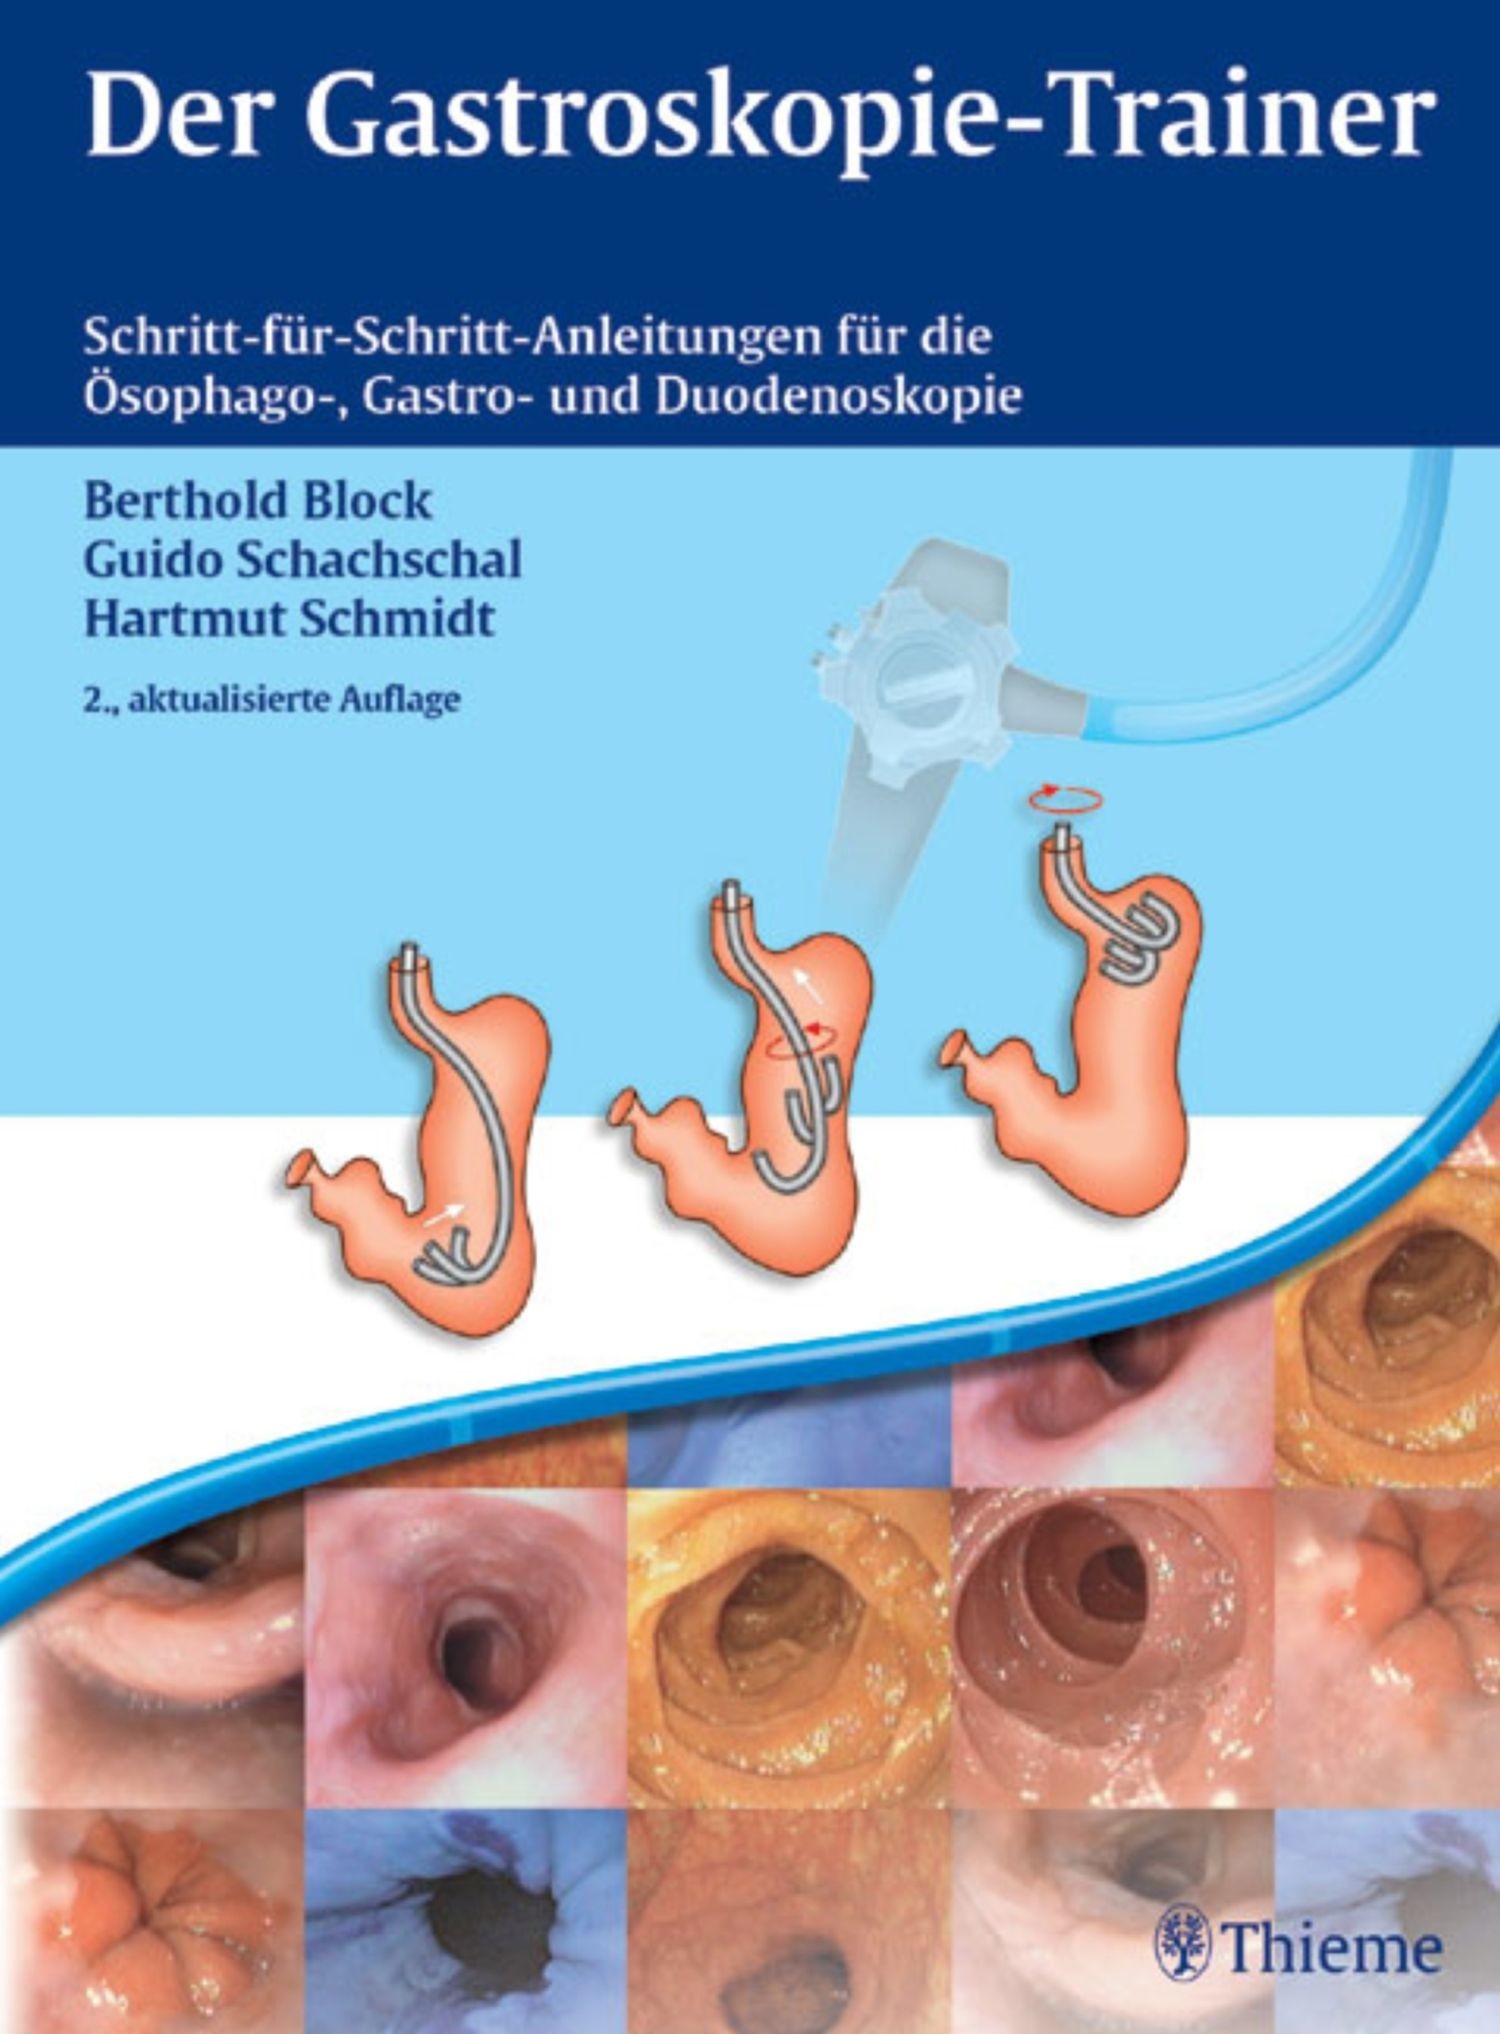 Der GastroskopieTrainer PDF eBook kaufen Ebooks